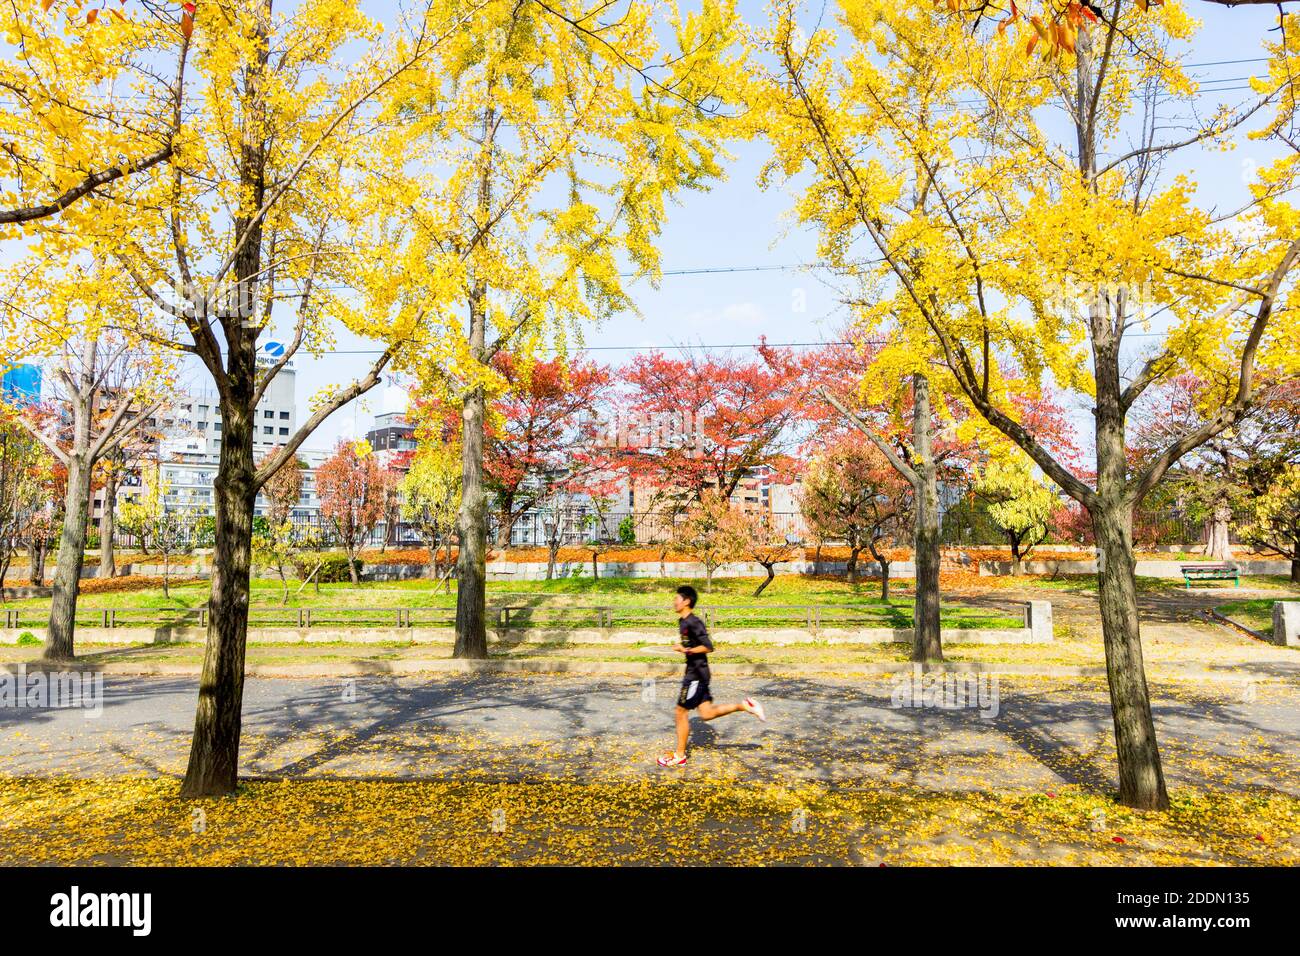 Autumn season in Osaka, Japan Stock Photo